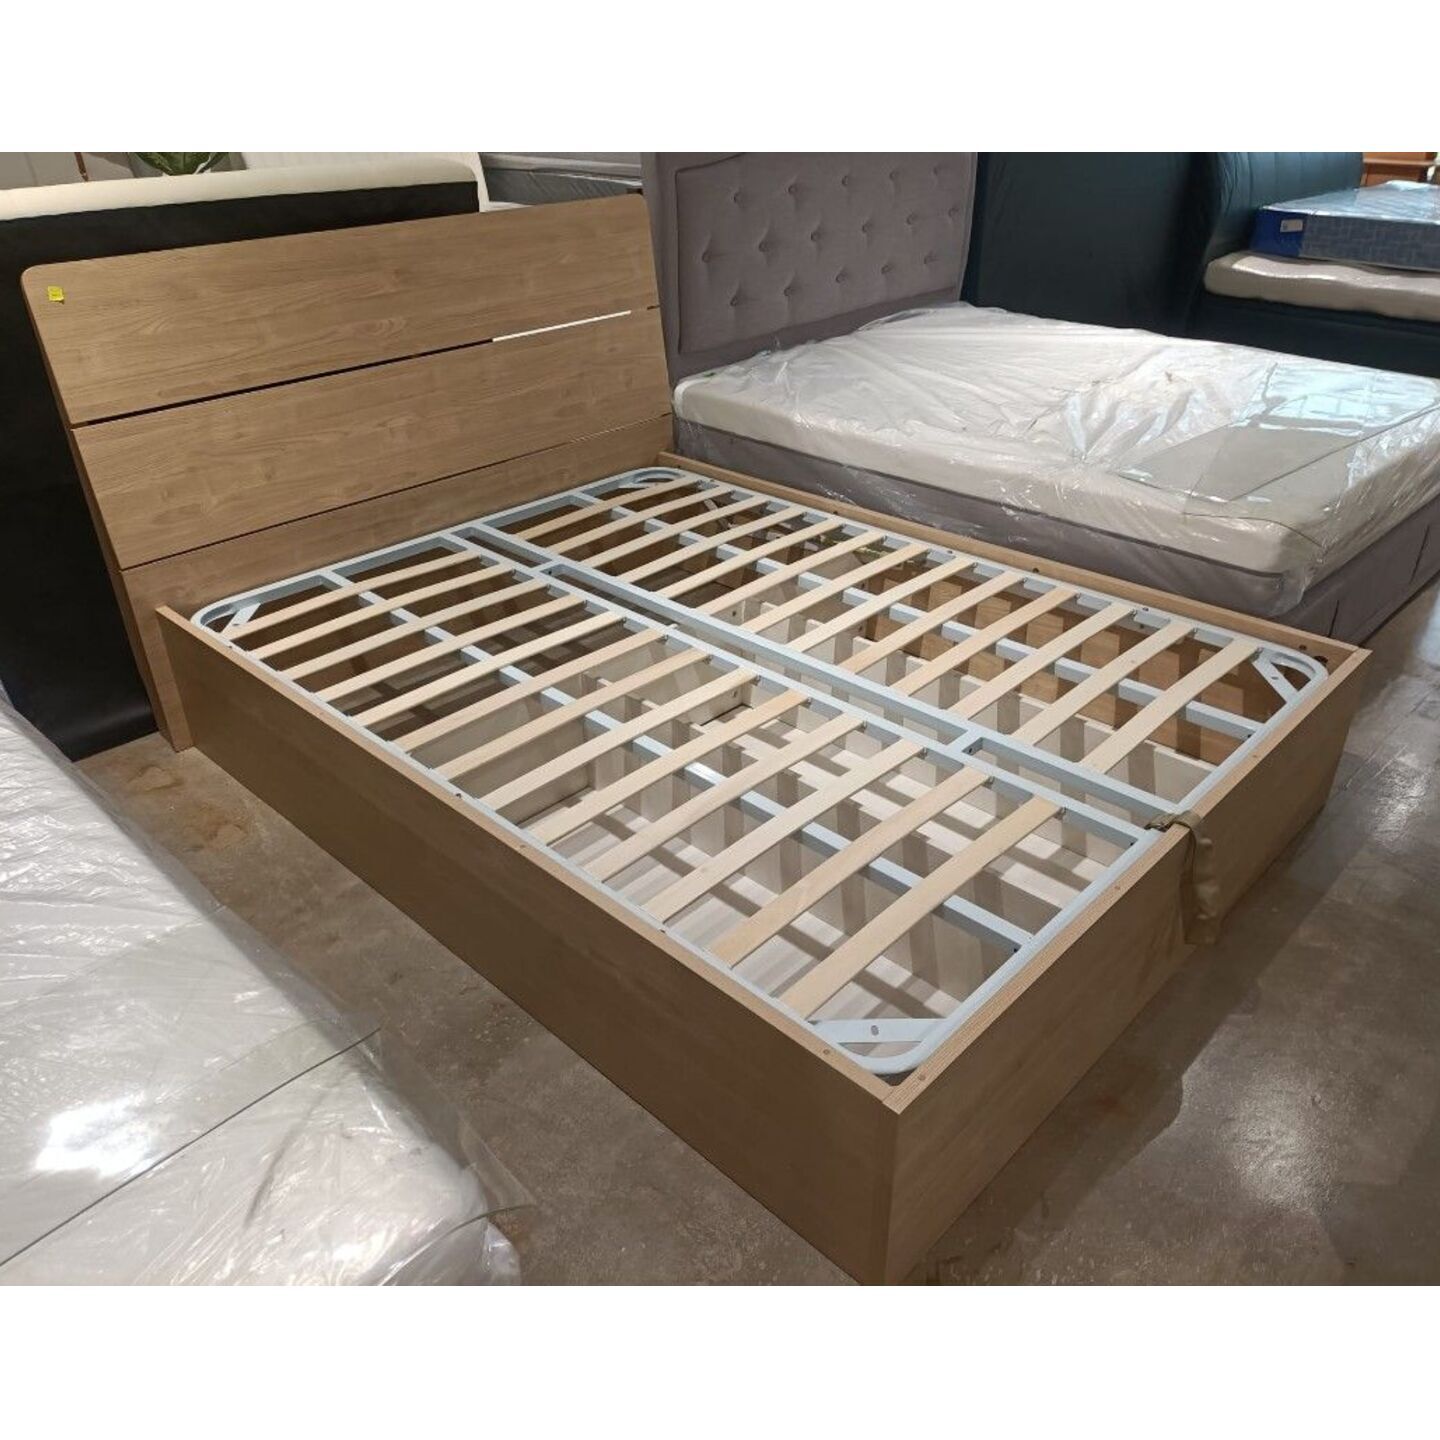 ELDEN Wooden Storage Bedframe in UK King Size